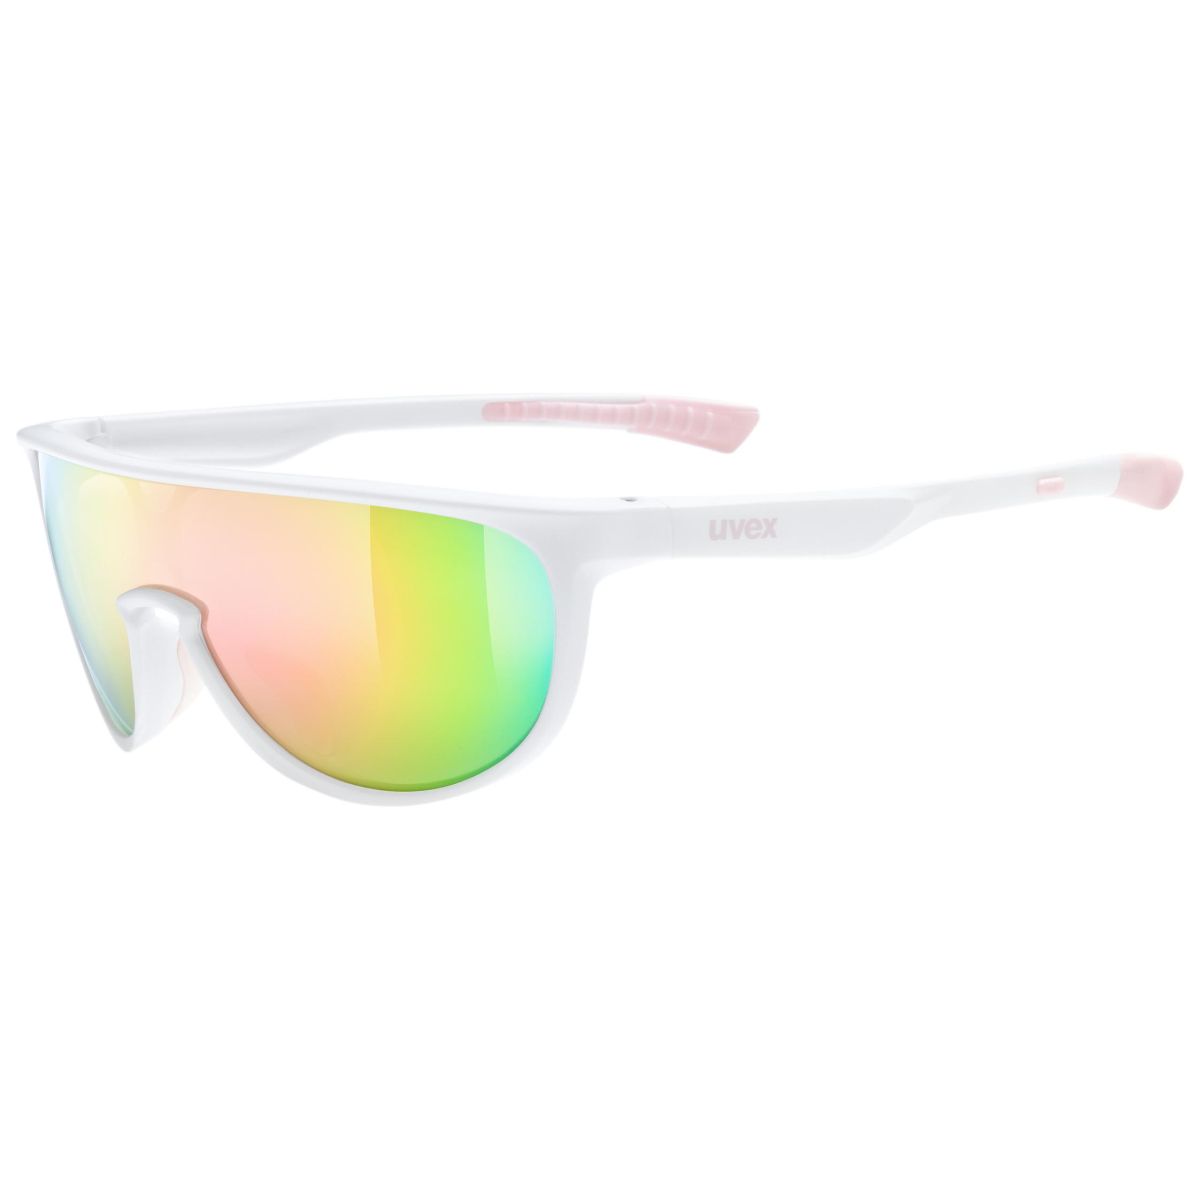 Produktbild von Uvex sportstyle 515 Kinderbrille - white matt/mirror pink